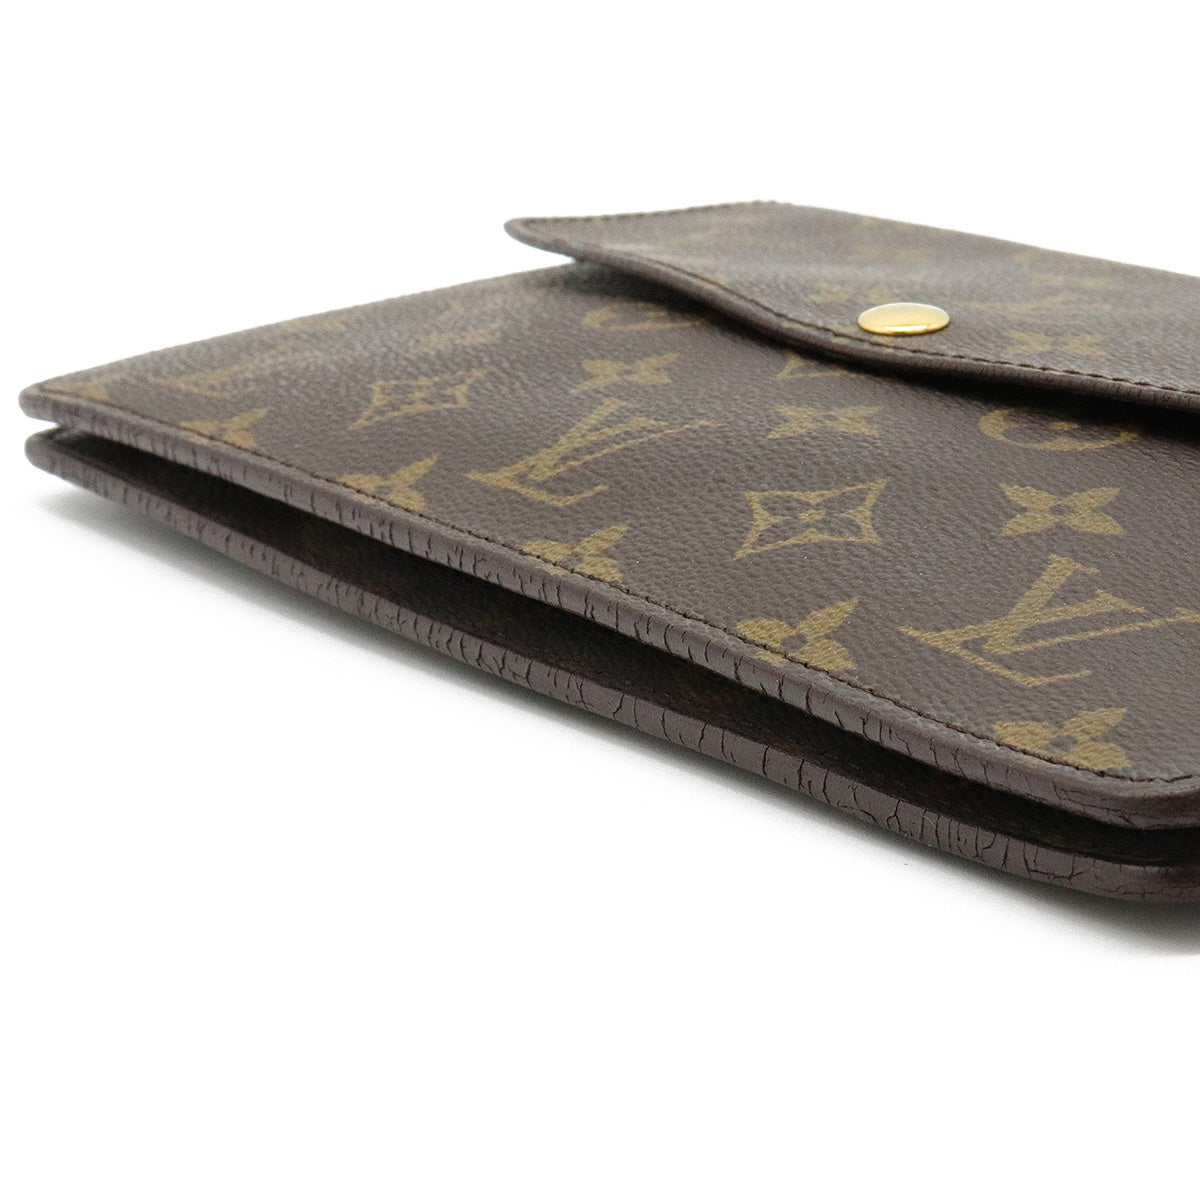 Louis Vuitton Double Lava Shoulder Bag M51815 – Timeless Vintage